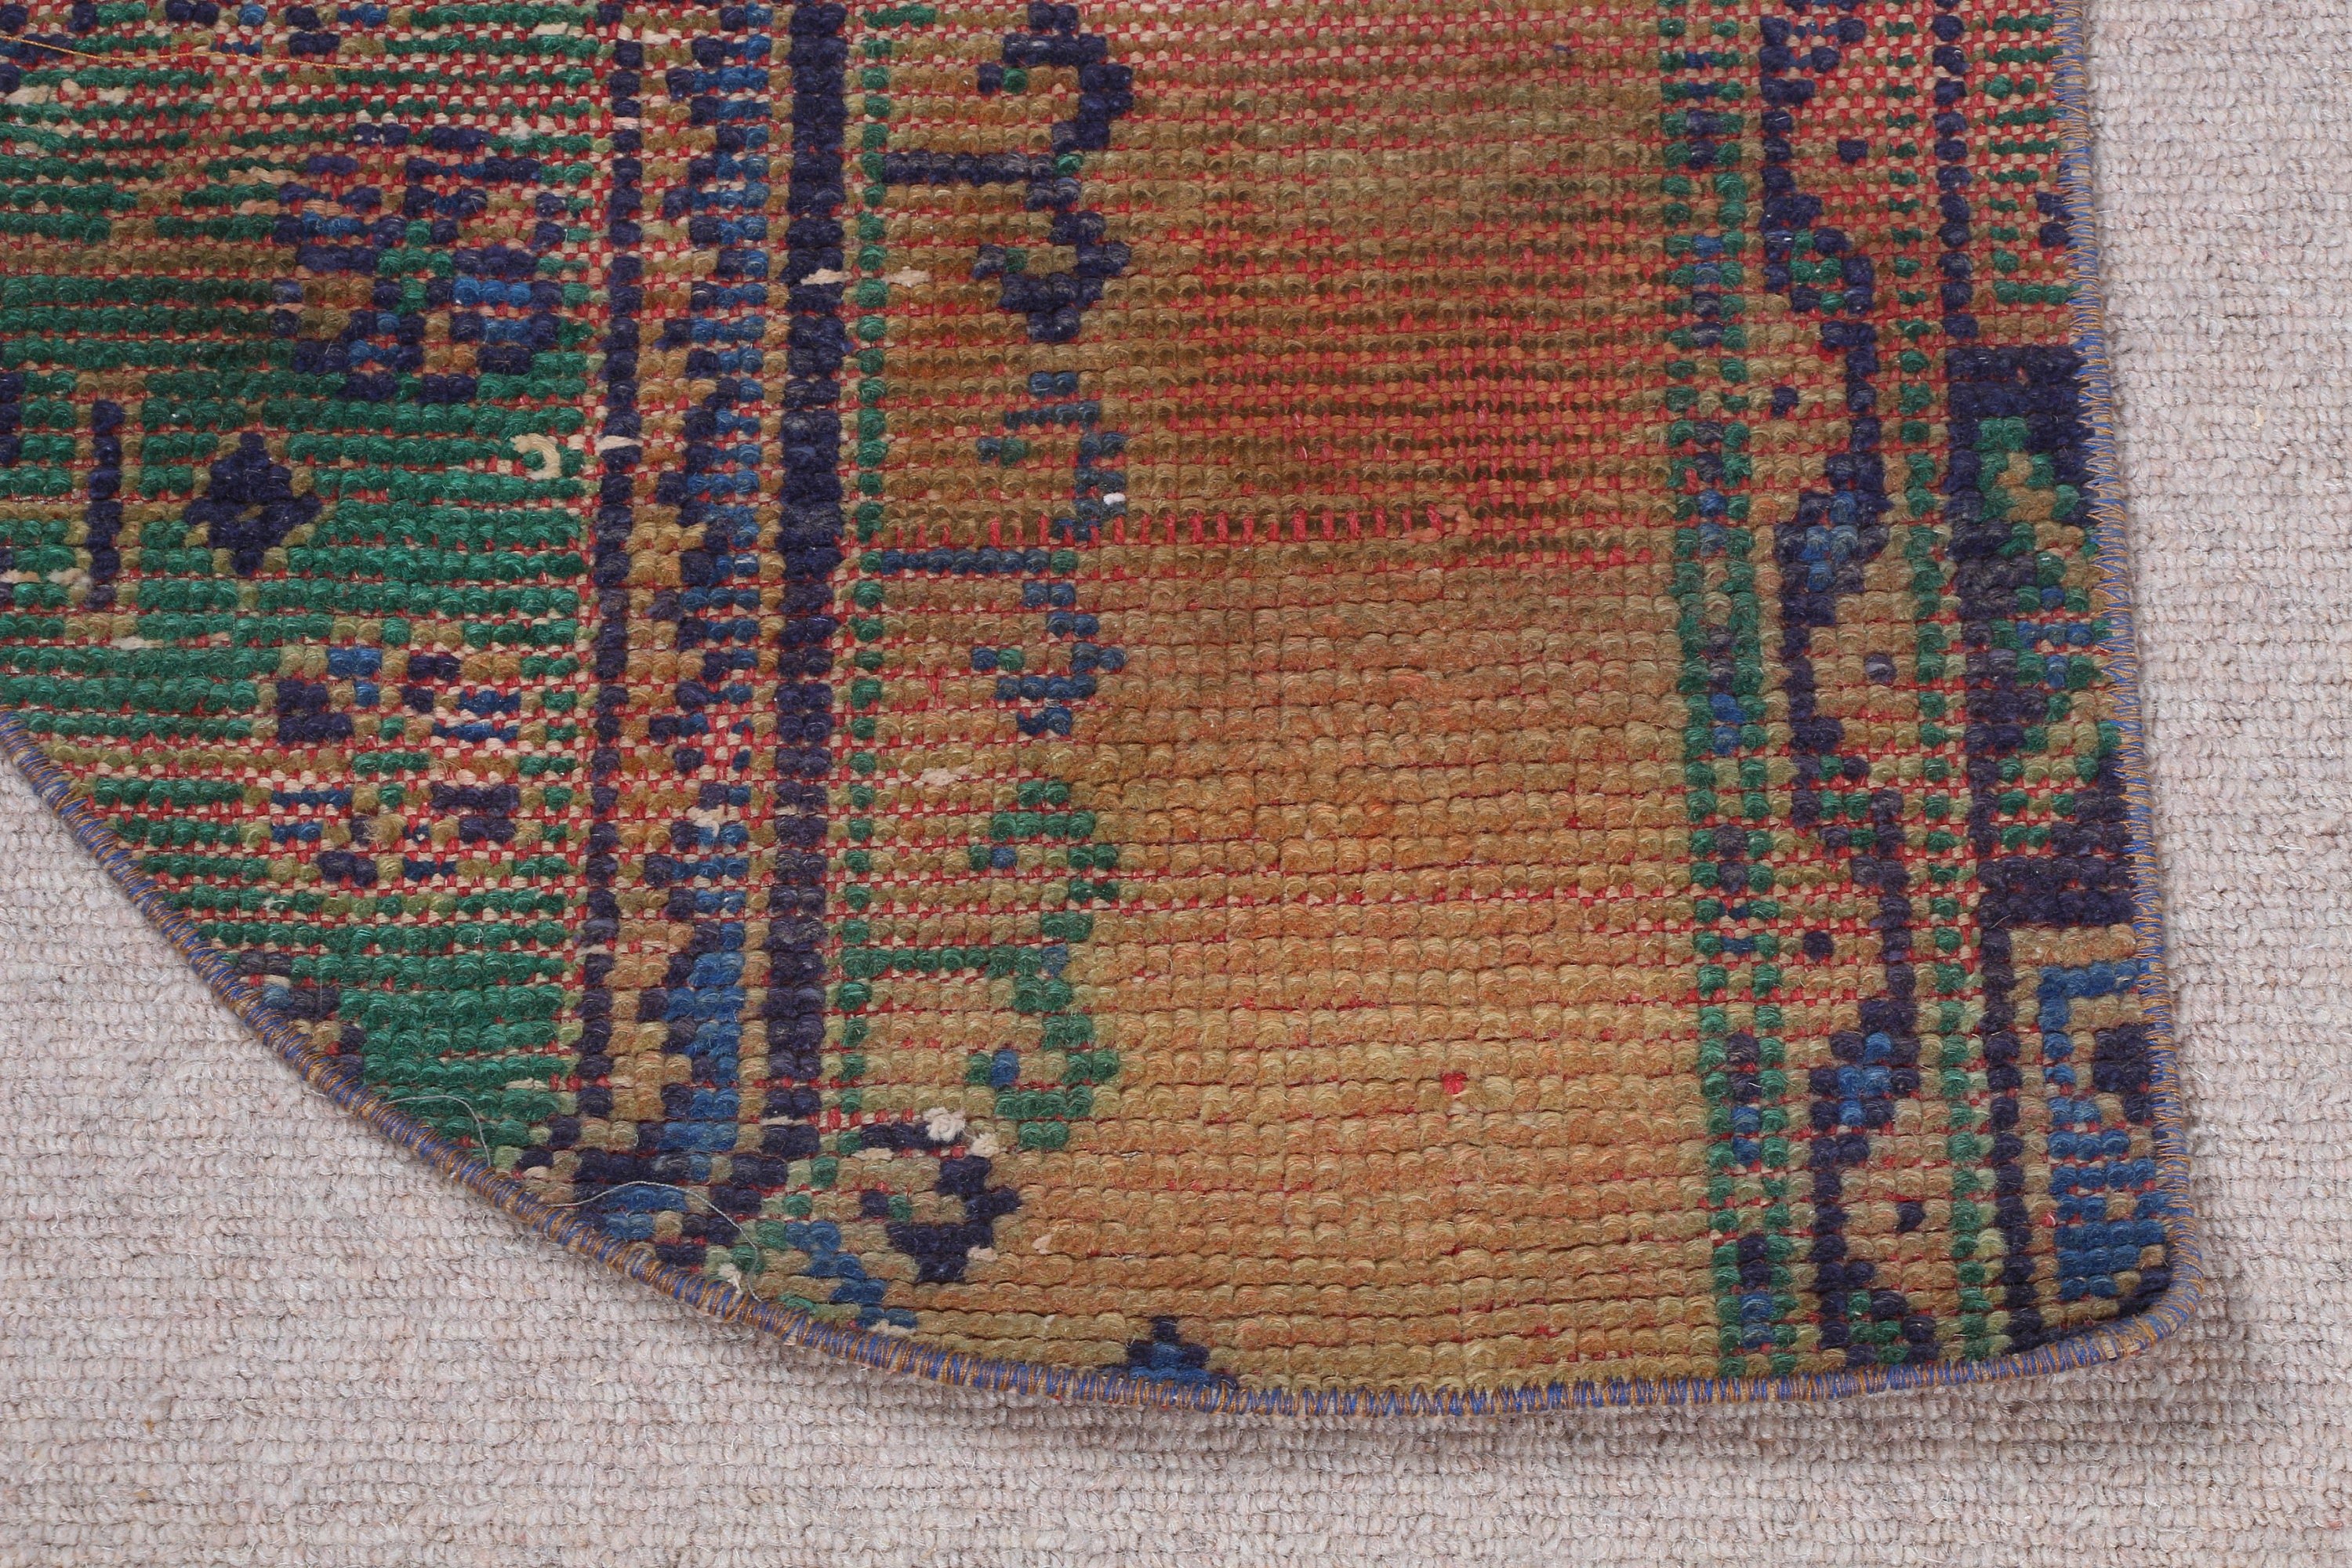 Hand Woven Rug, Kitchen Rug, Door Mat Rug, Turkish Rugs, Green Moroccan Rug, Wool Rug, Wall Hanging Rug, Vintage Rug, 2.5x1.5 ft Small Rug